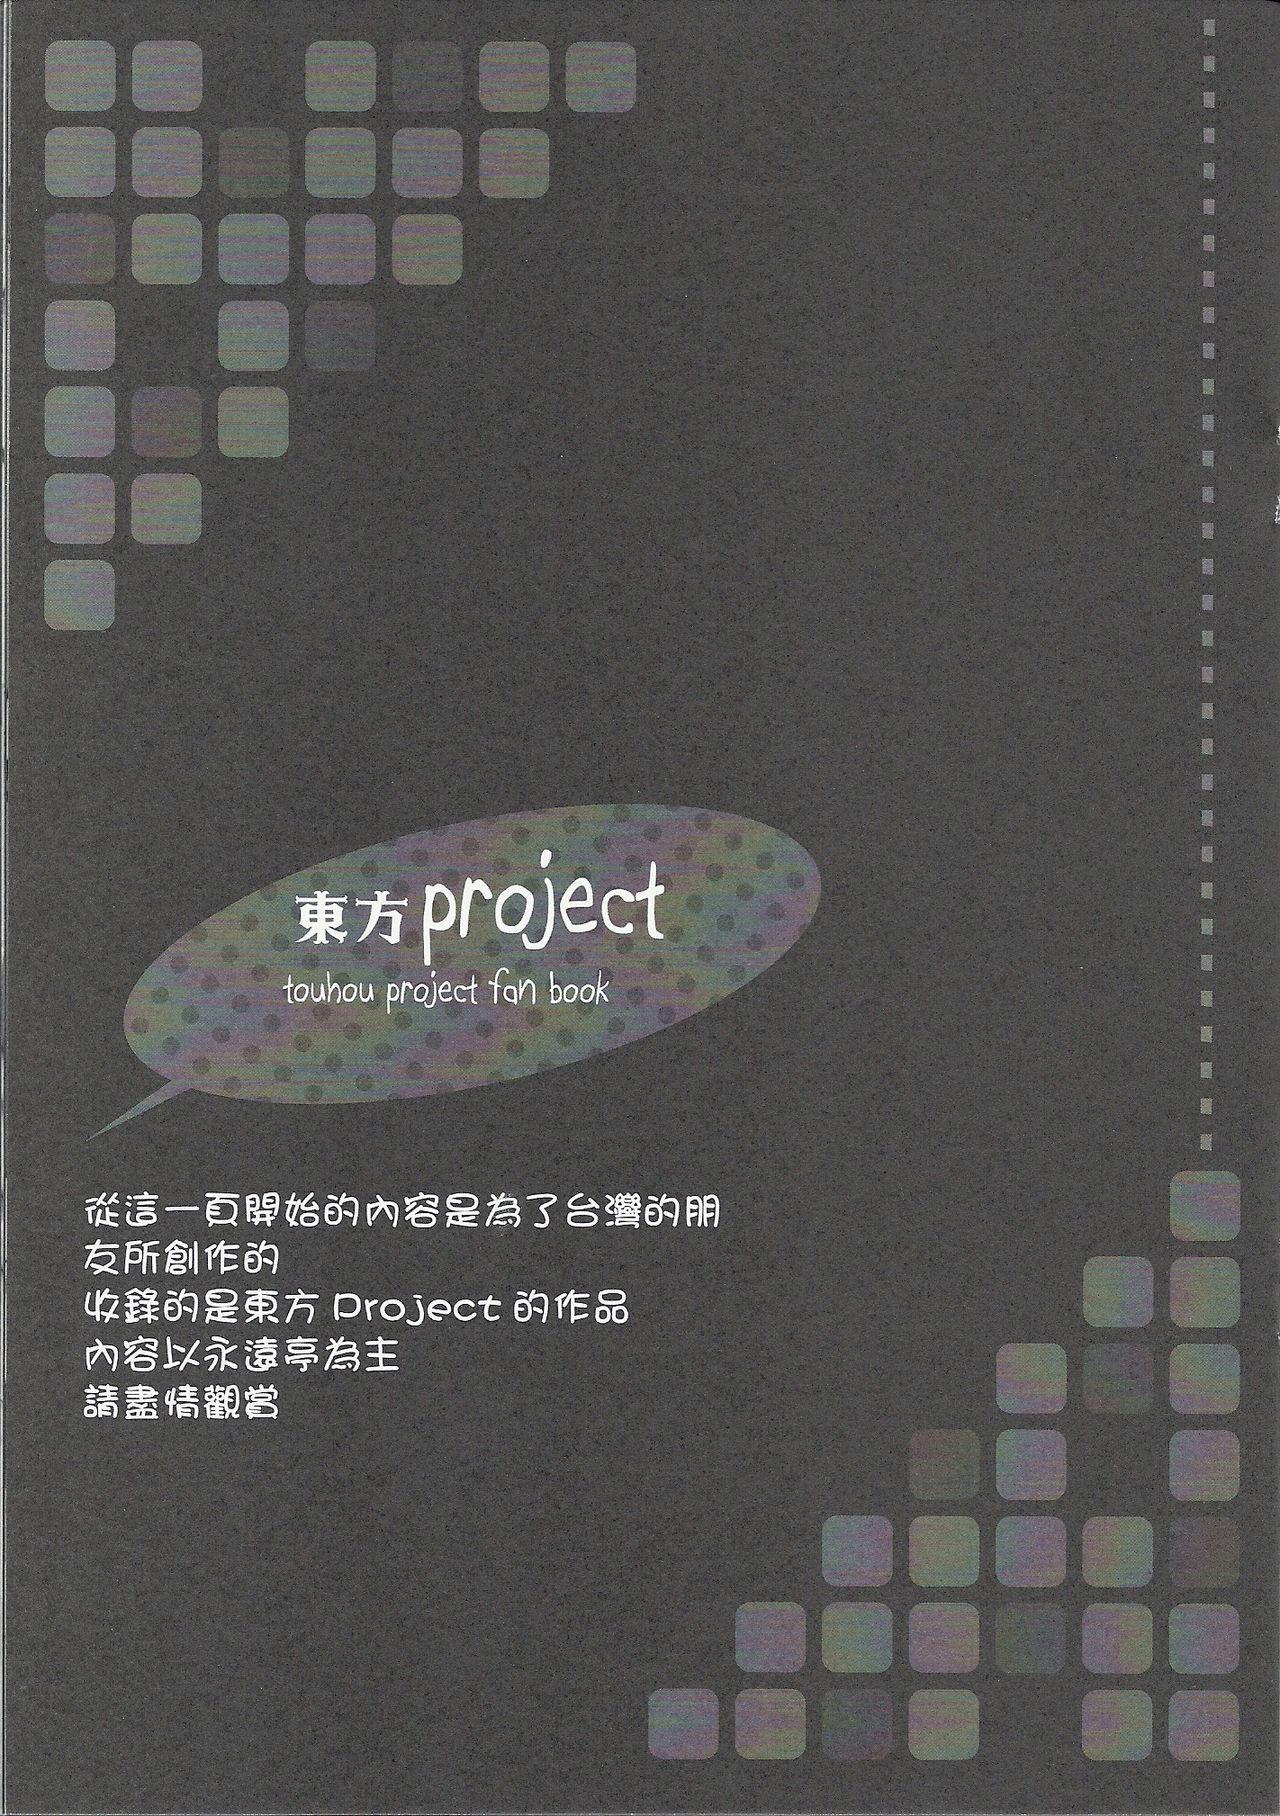 Ready Go!(FF20) [LiZ (里海ひなこ)]  (ソードアート・オンライン、東方Project) [中国語](29页)